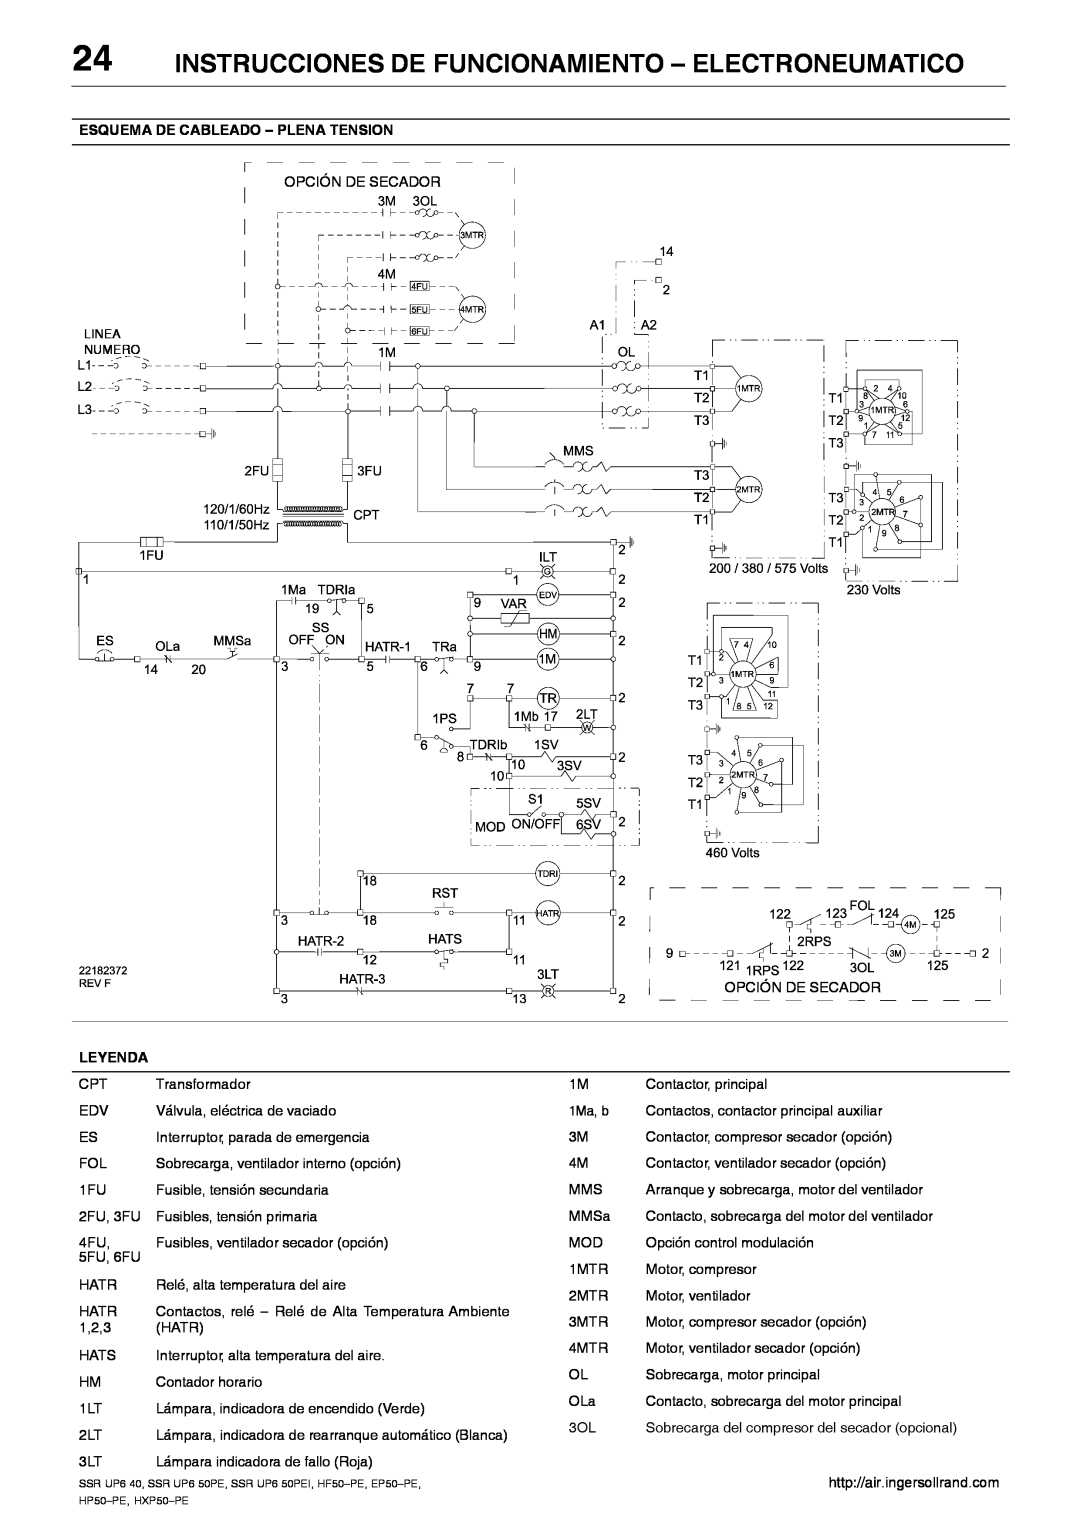 Ingersoll-Rand HXP50-PE Instrucciones De Funcionamiento - Electroneumatico, Esquema De Cableado - Plena Tension, Leyenda 